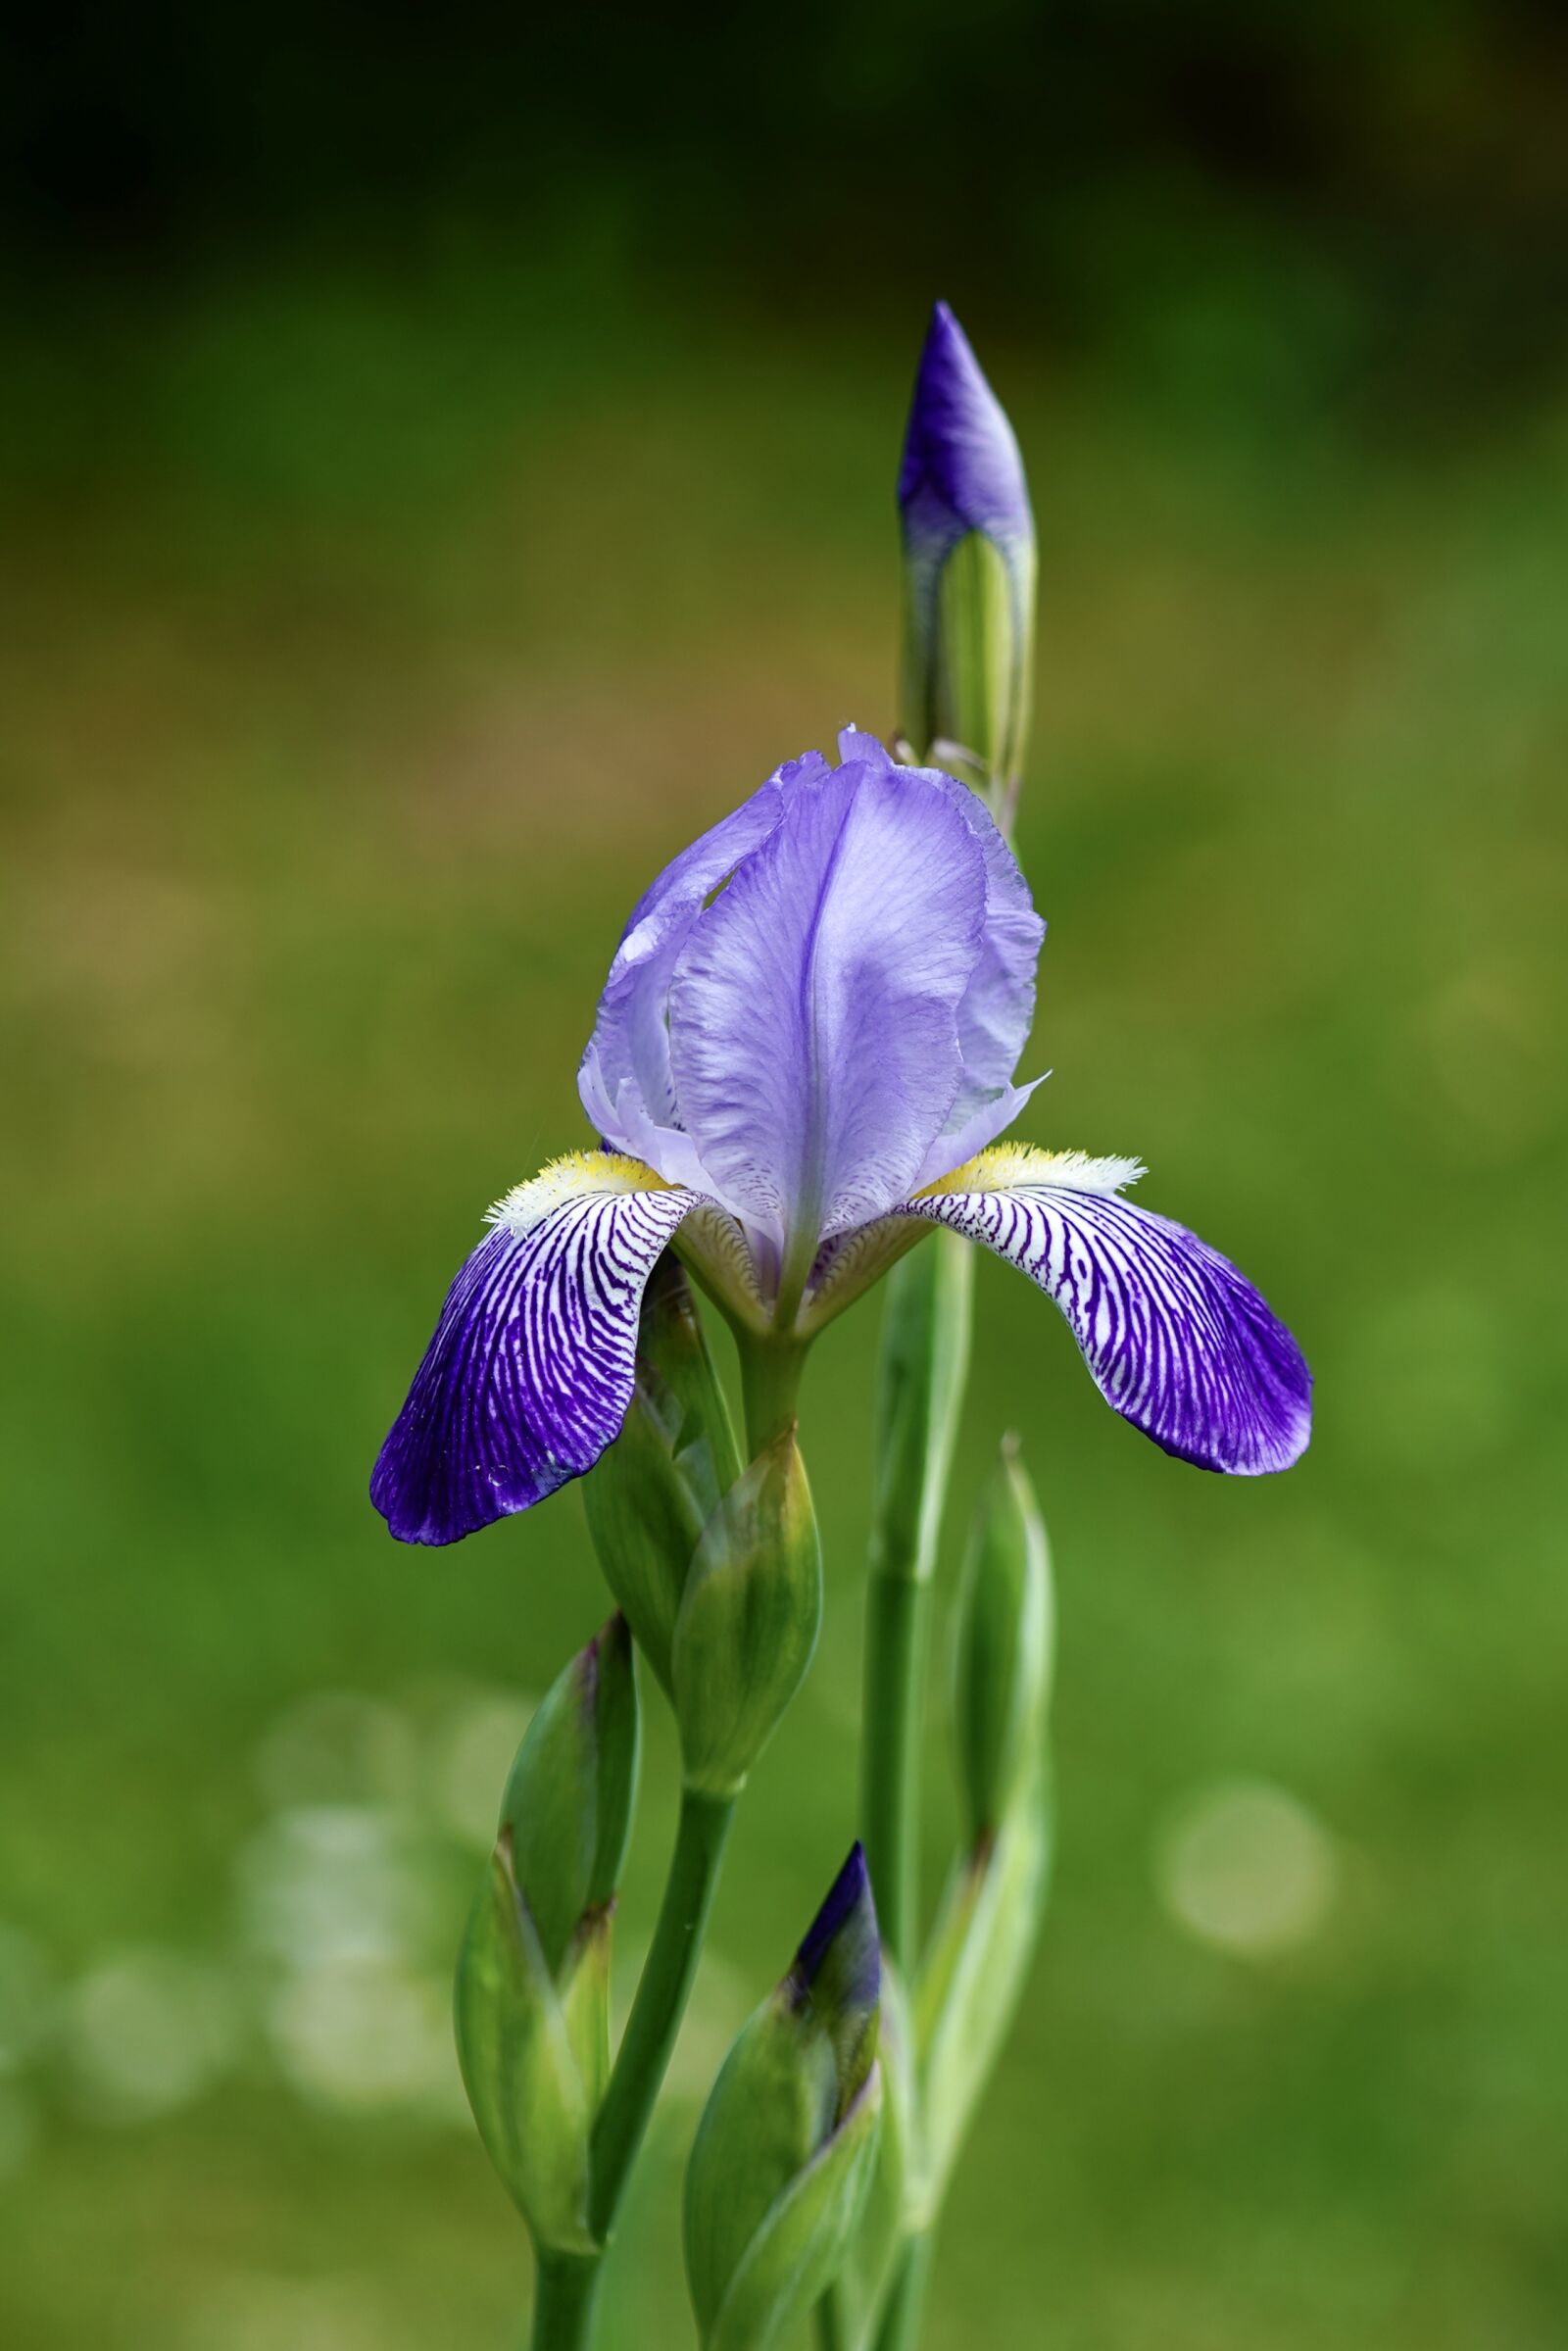 Sony FE 70-200mm F4 G OSS sample photo. Iris, iris flower, flower photography